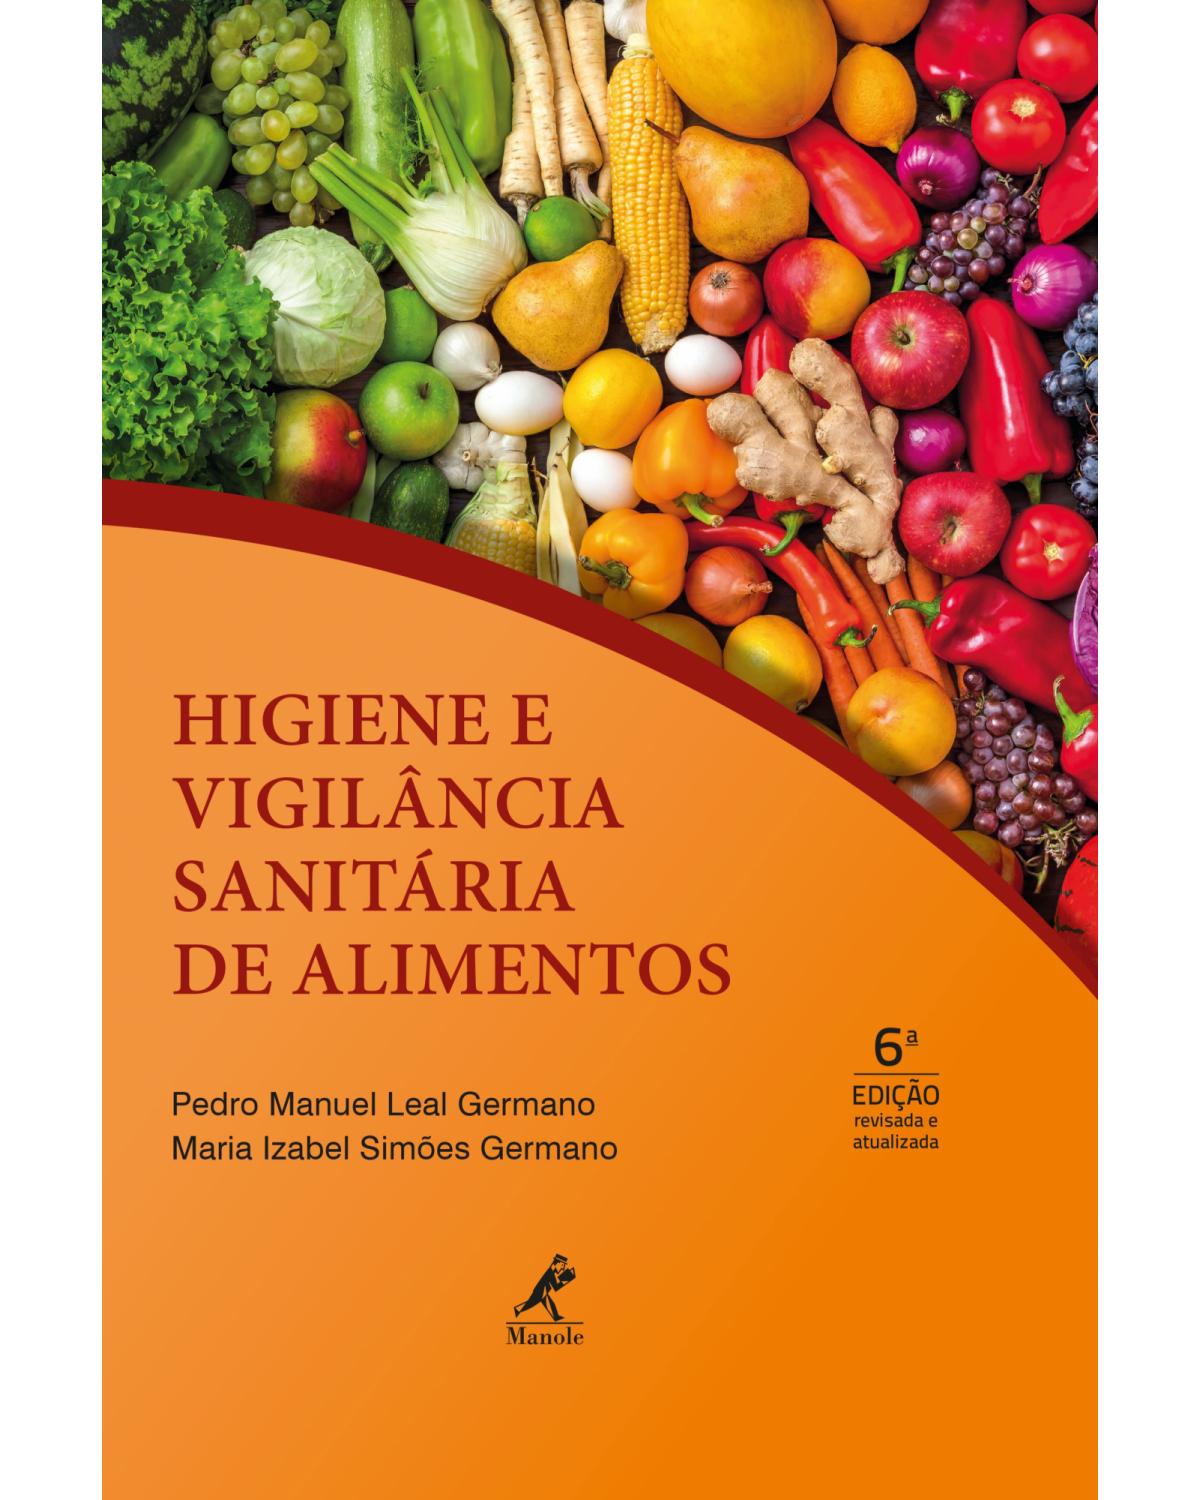 Higiene e vigilância sanitária de alimentos - 6ª Edição | 2019